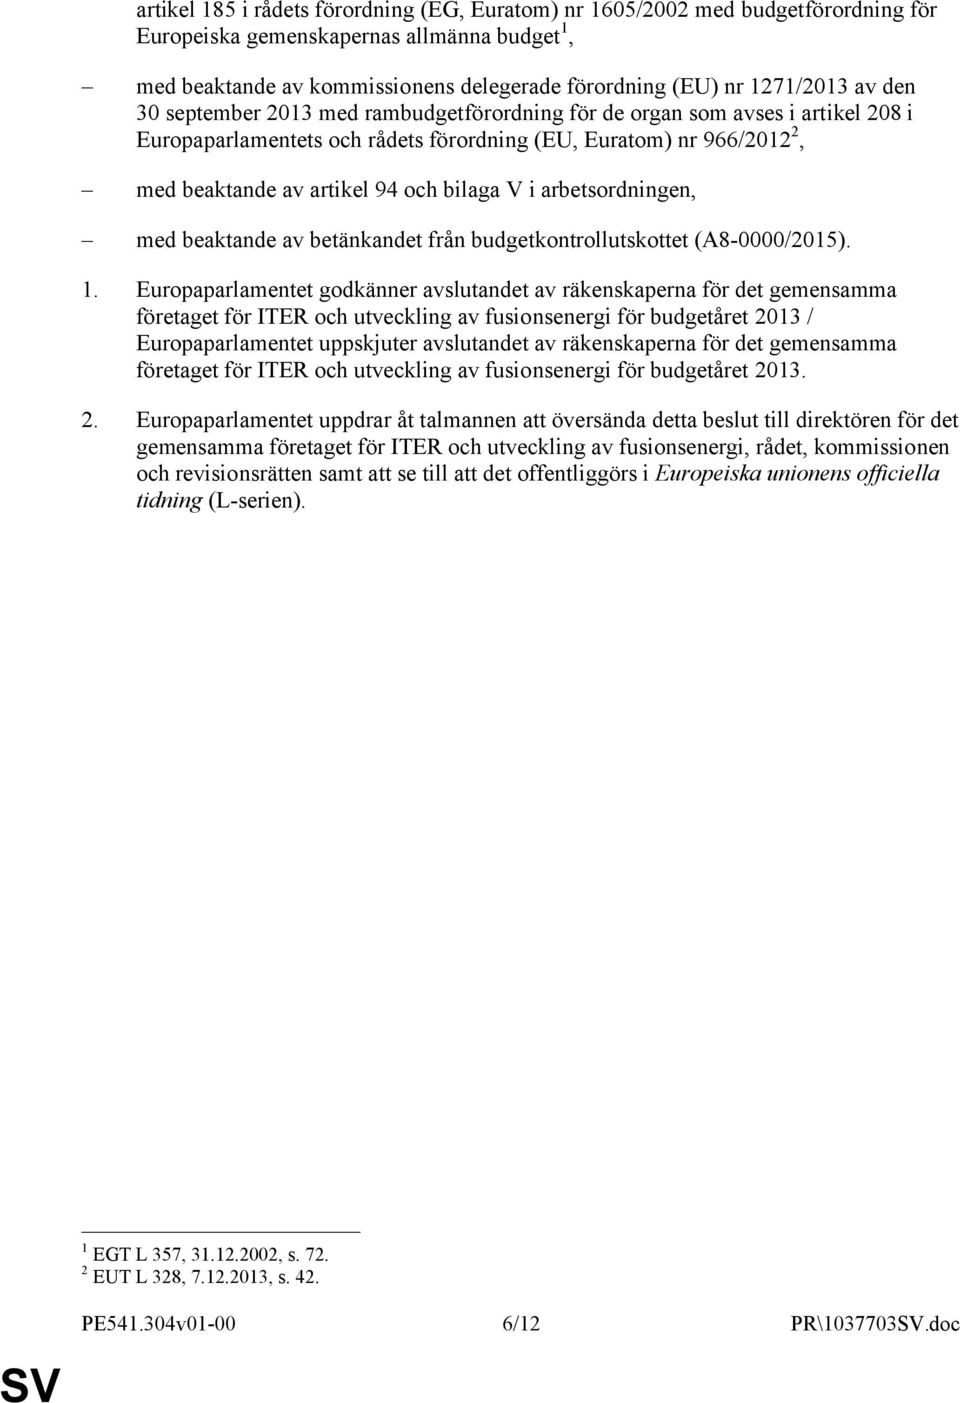 i arbetsordningen, med beaktande av betänkandet från budgetkontrollutskottet (A8-0000/2015). 1.